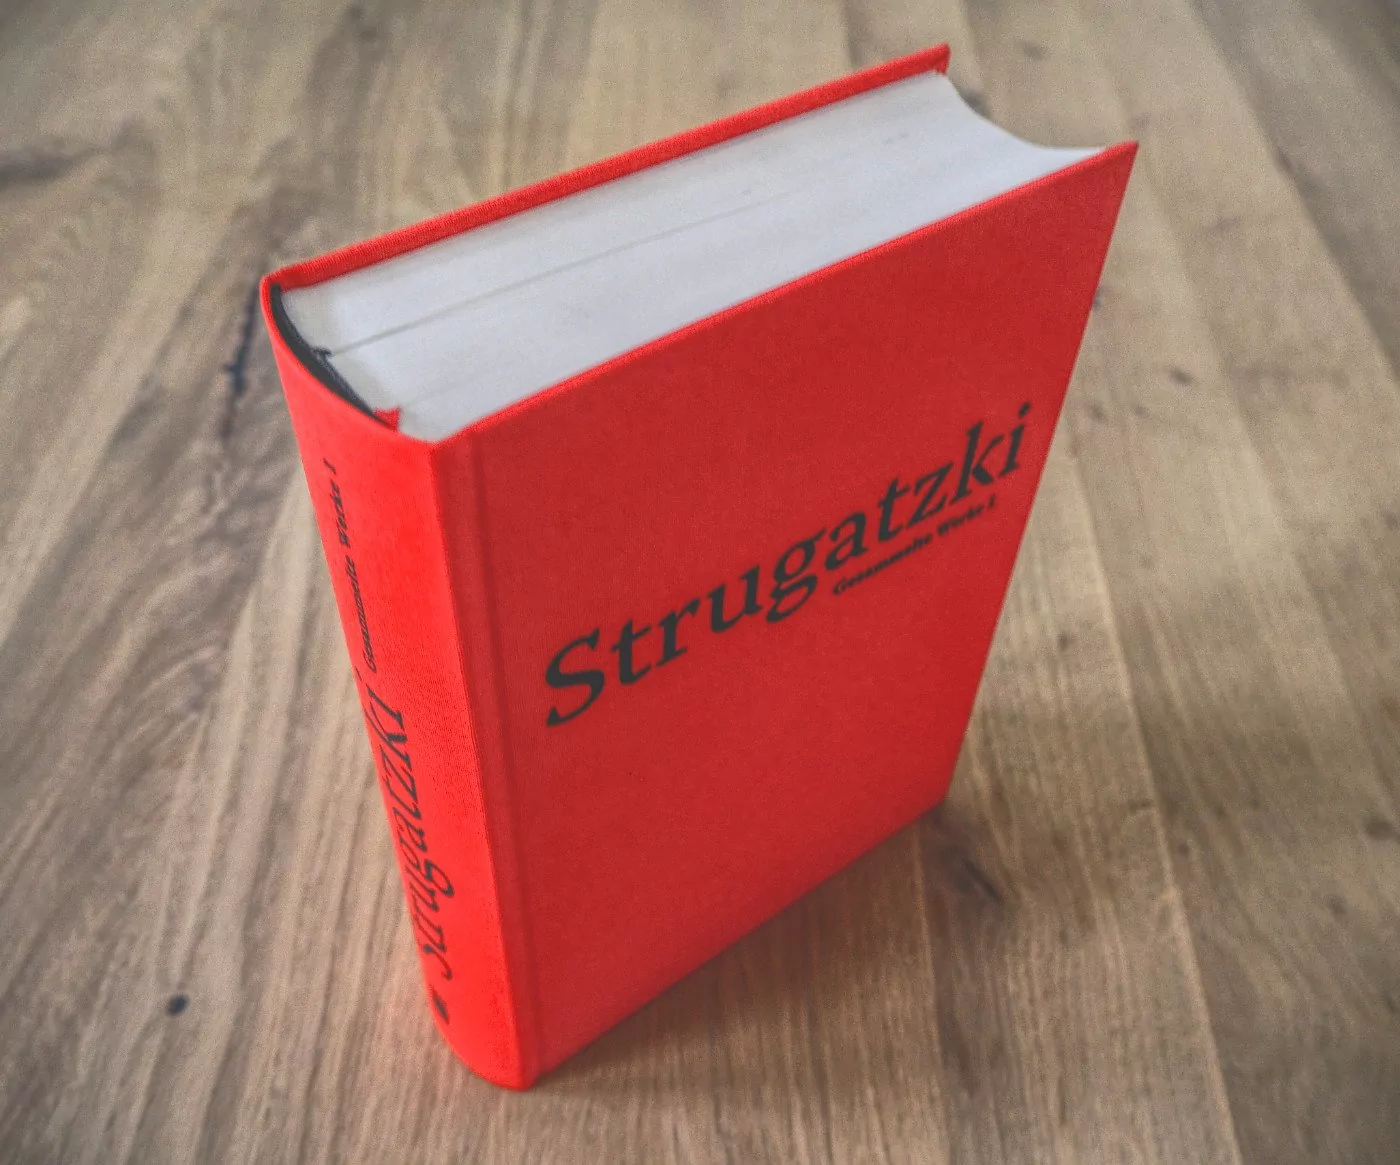 Ein rotes Buch mit schwarzem Einband auf einem Holztisch.